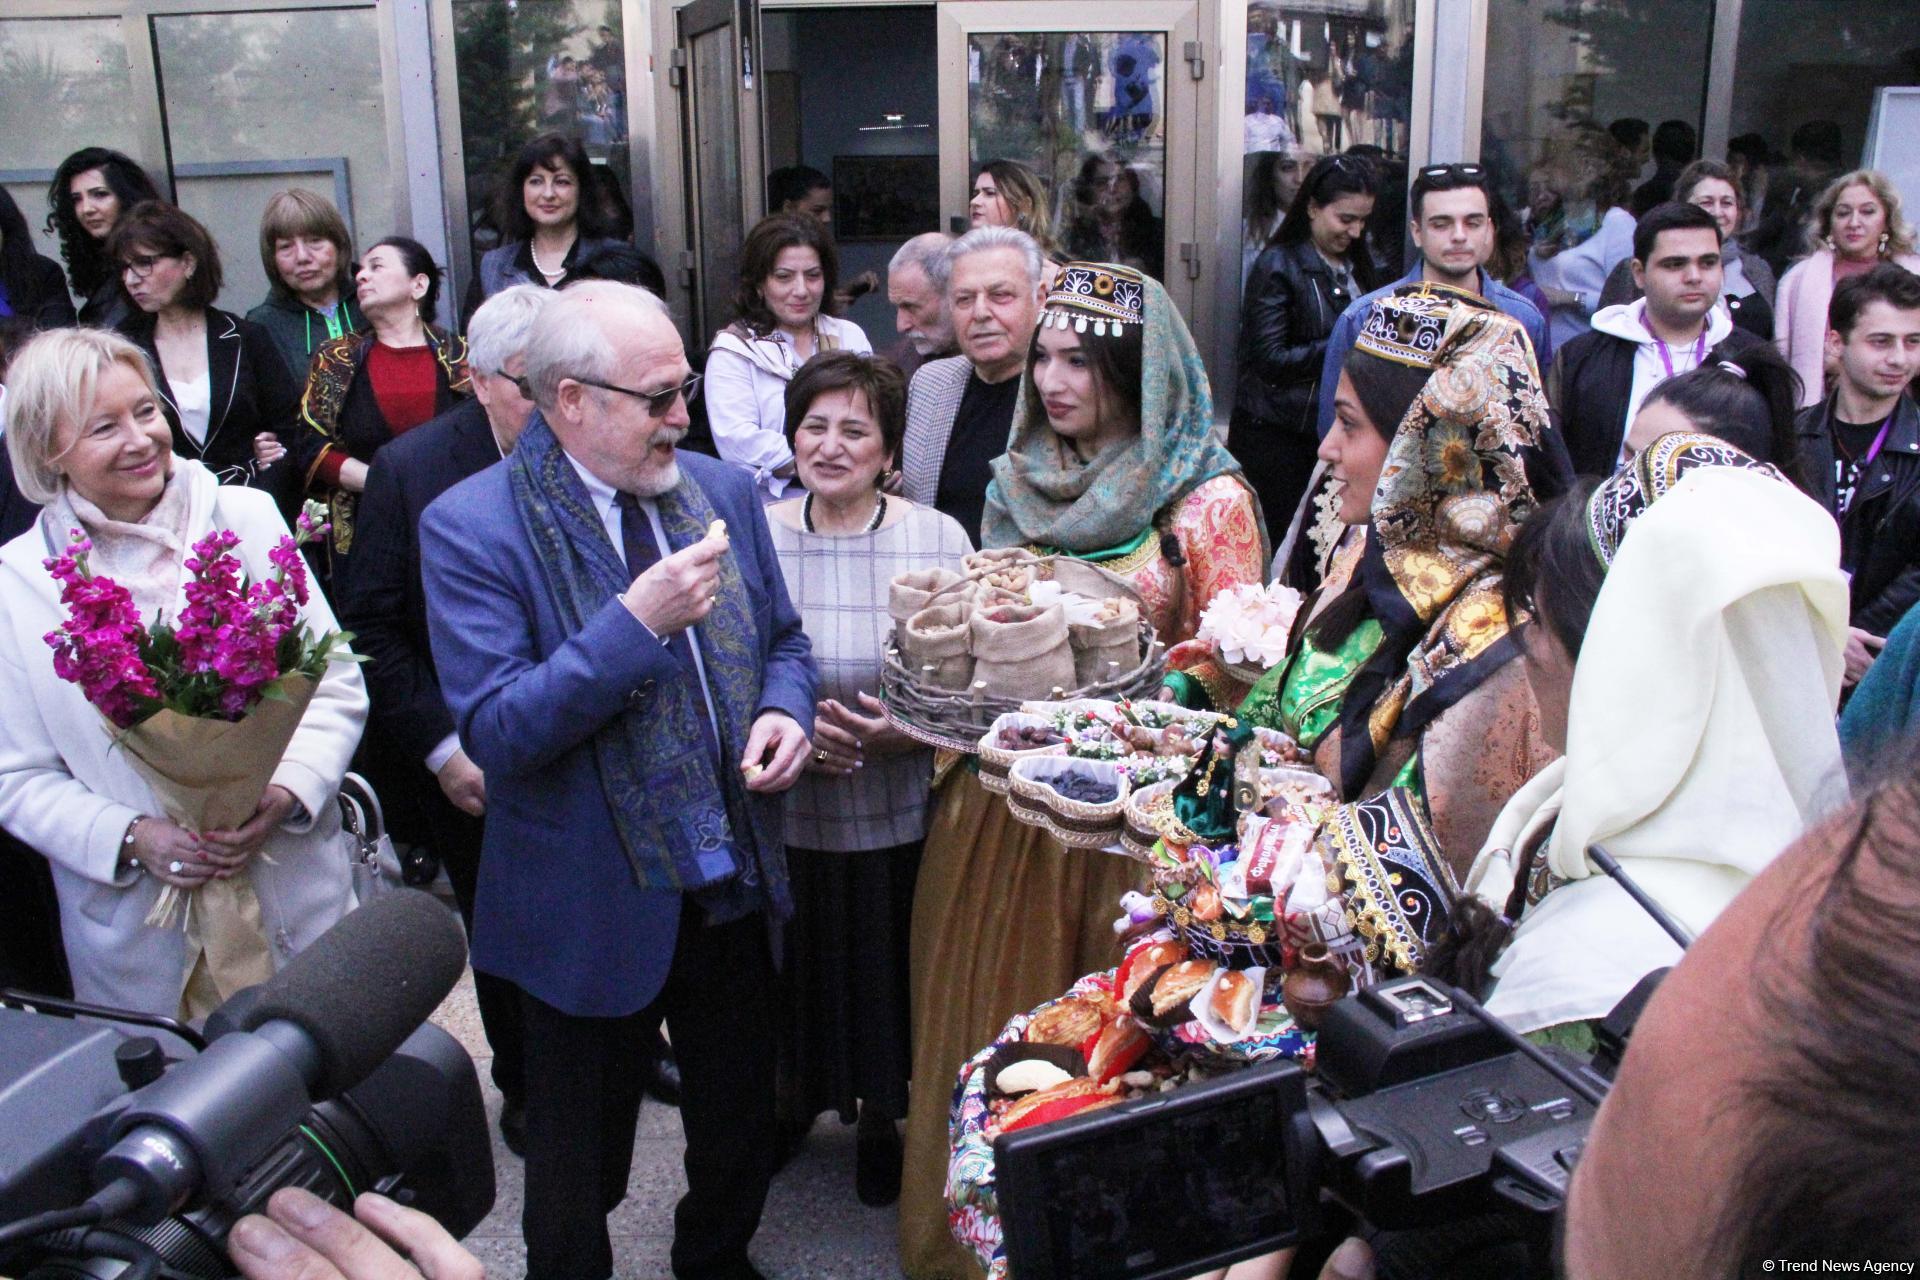 Азербайджанскими сладостями и песнями отметили 100-летие ВГИКа в Баку (ФОТО)